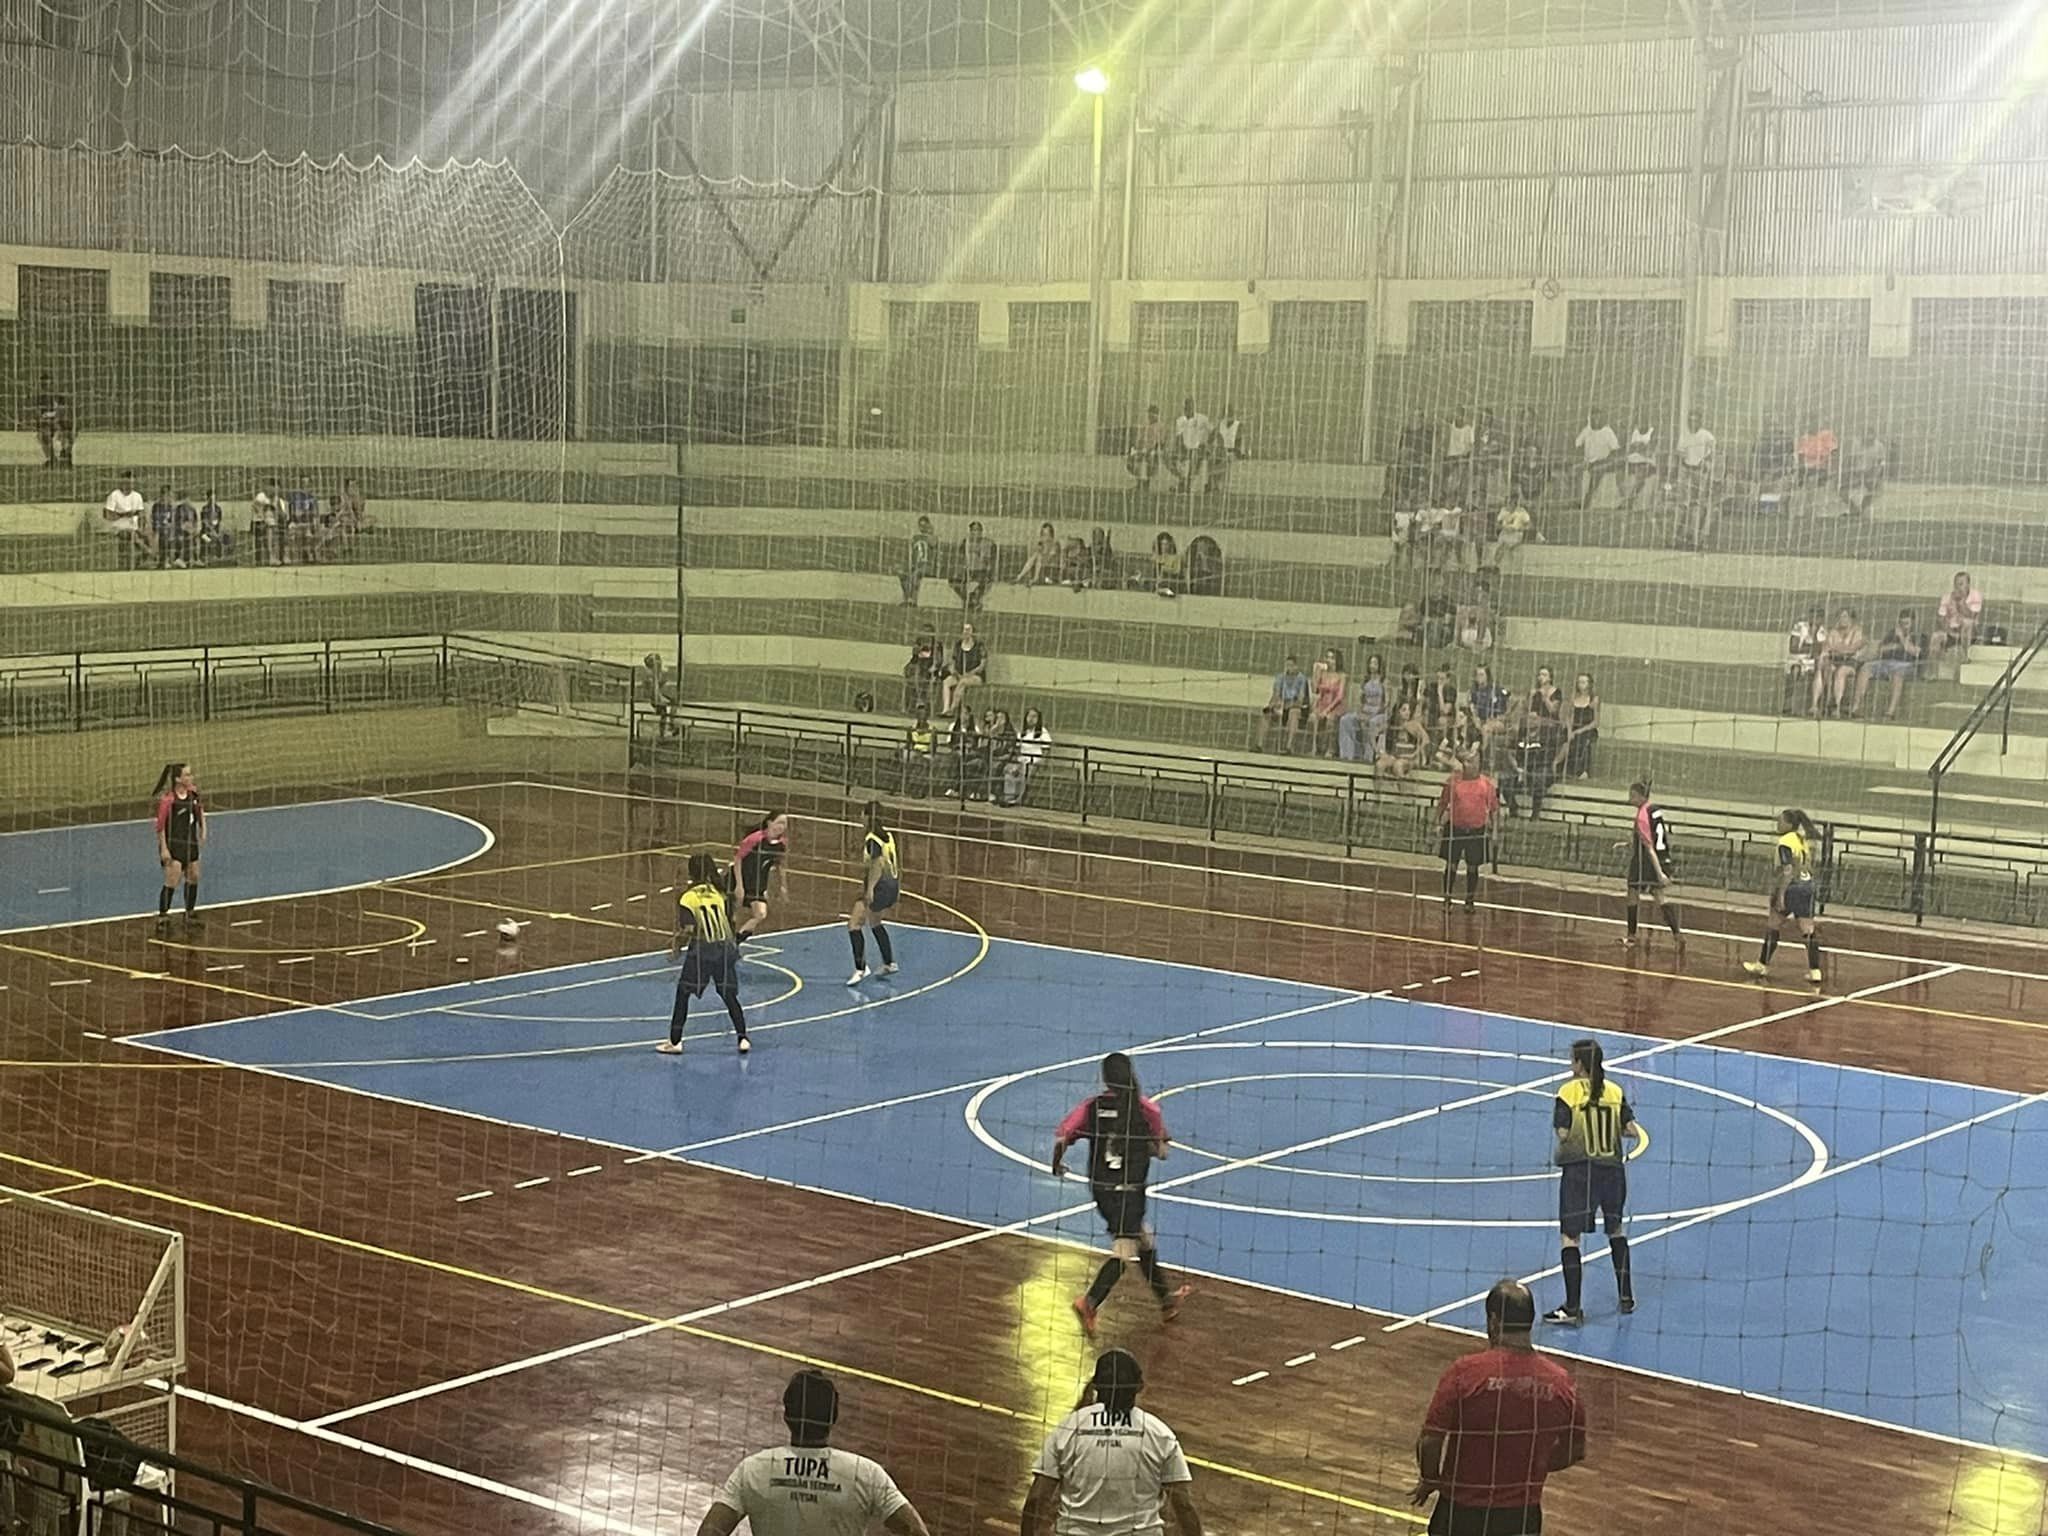 Copa Record de Futsal Feminino 2023